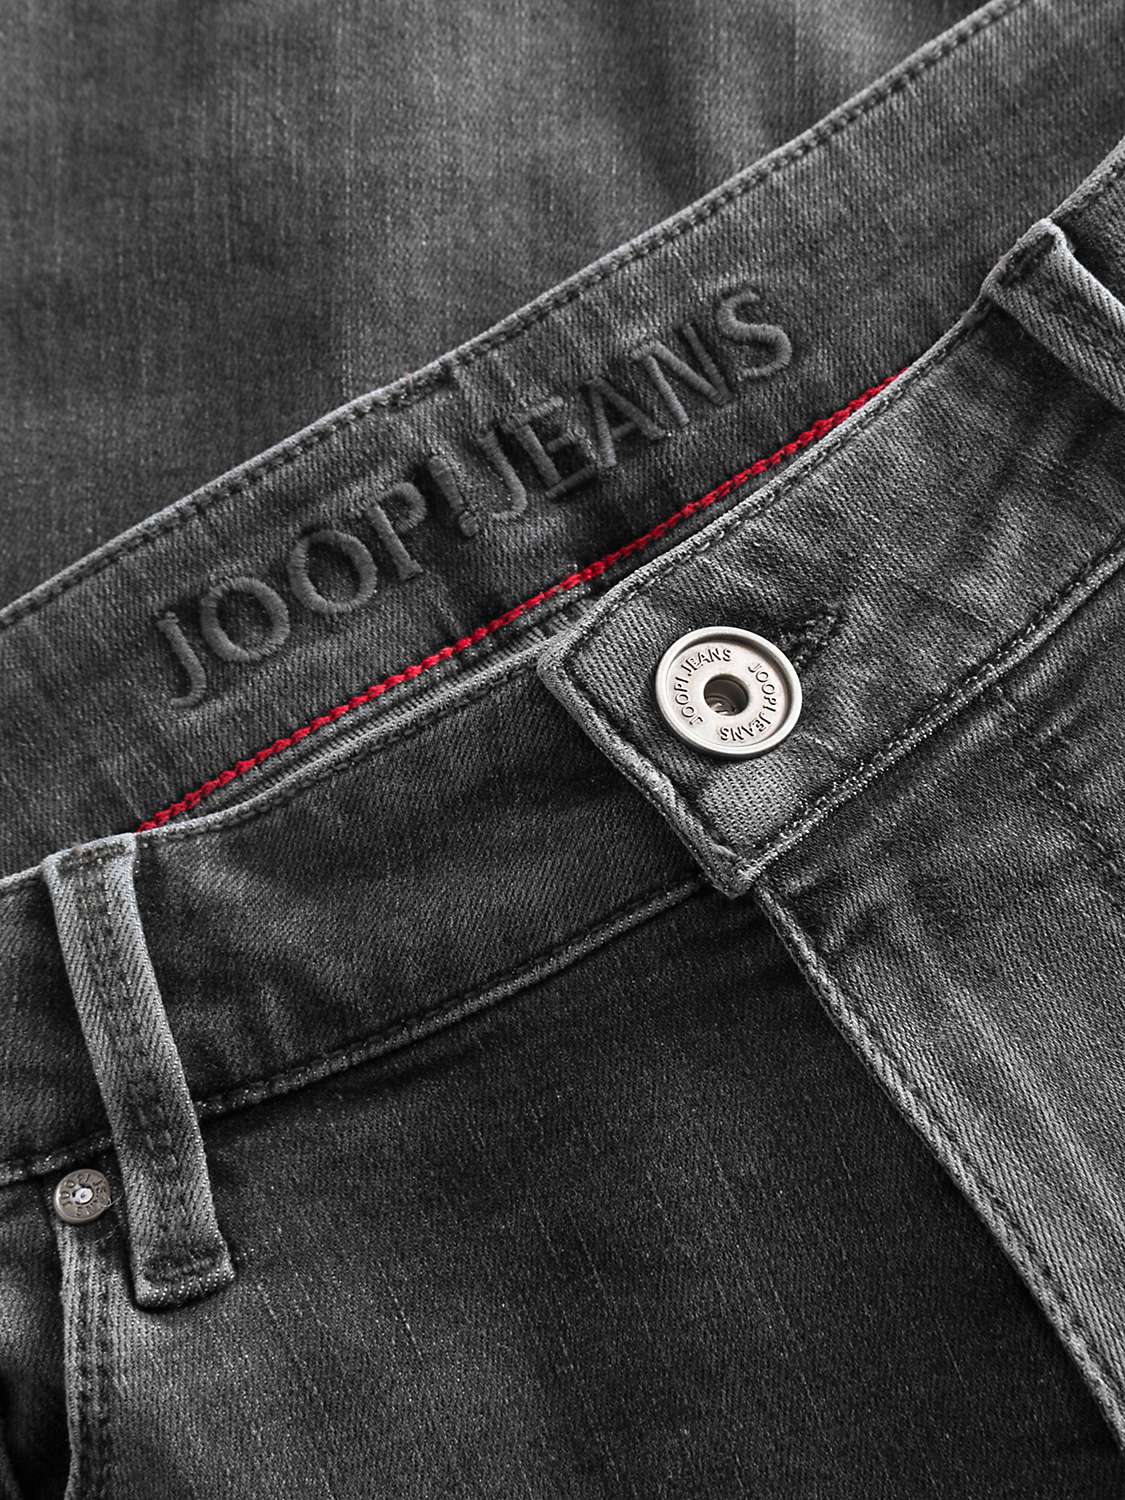 Buy JOOP! Stephen Slim Fit Jeans Online at johnlewis.com